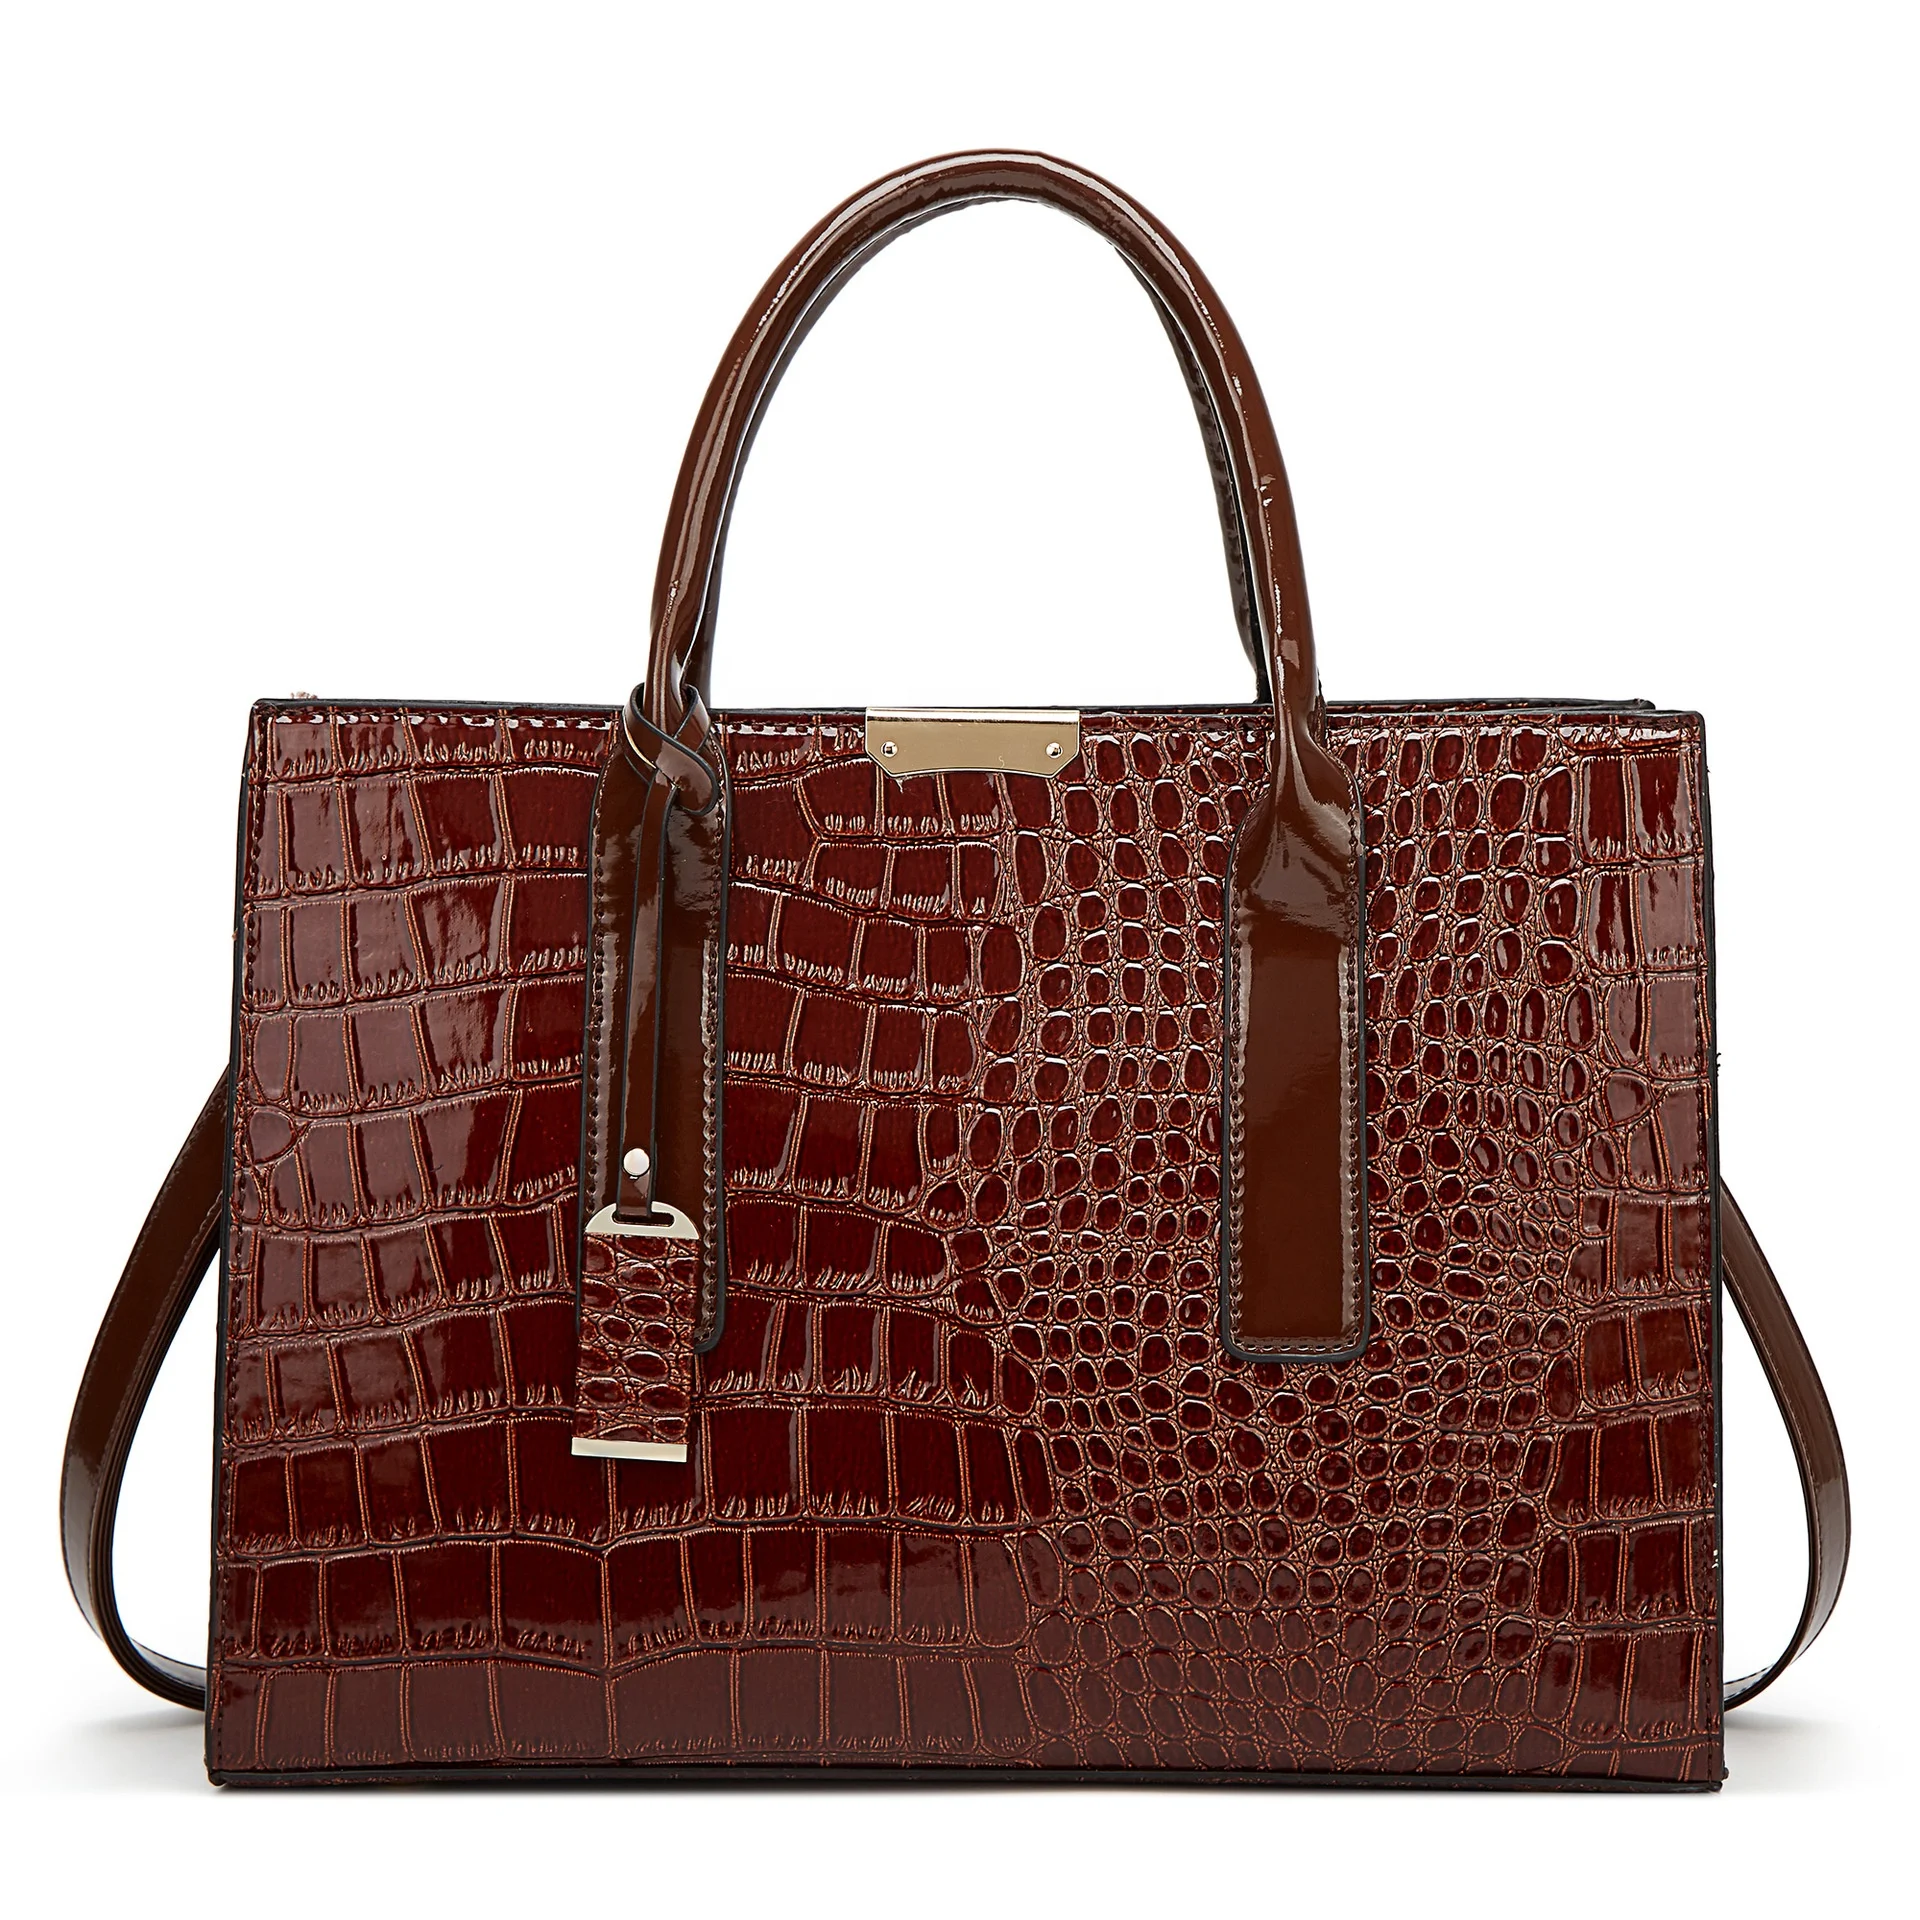 

2021 New hot sale delicate elegant vogue alligator women patent leather OL style tote shoulder handbag for wholesale (XJBYT304), Black, red, brown